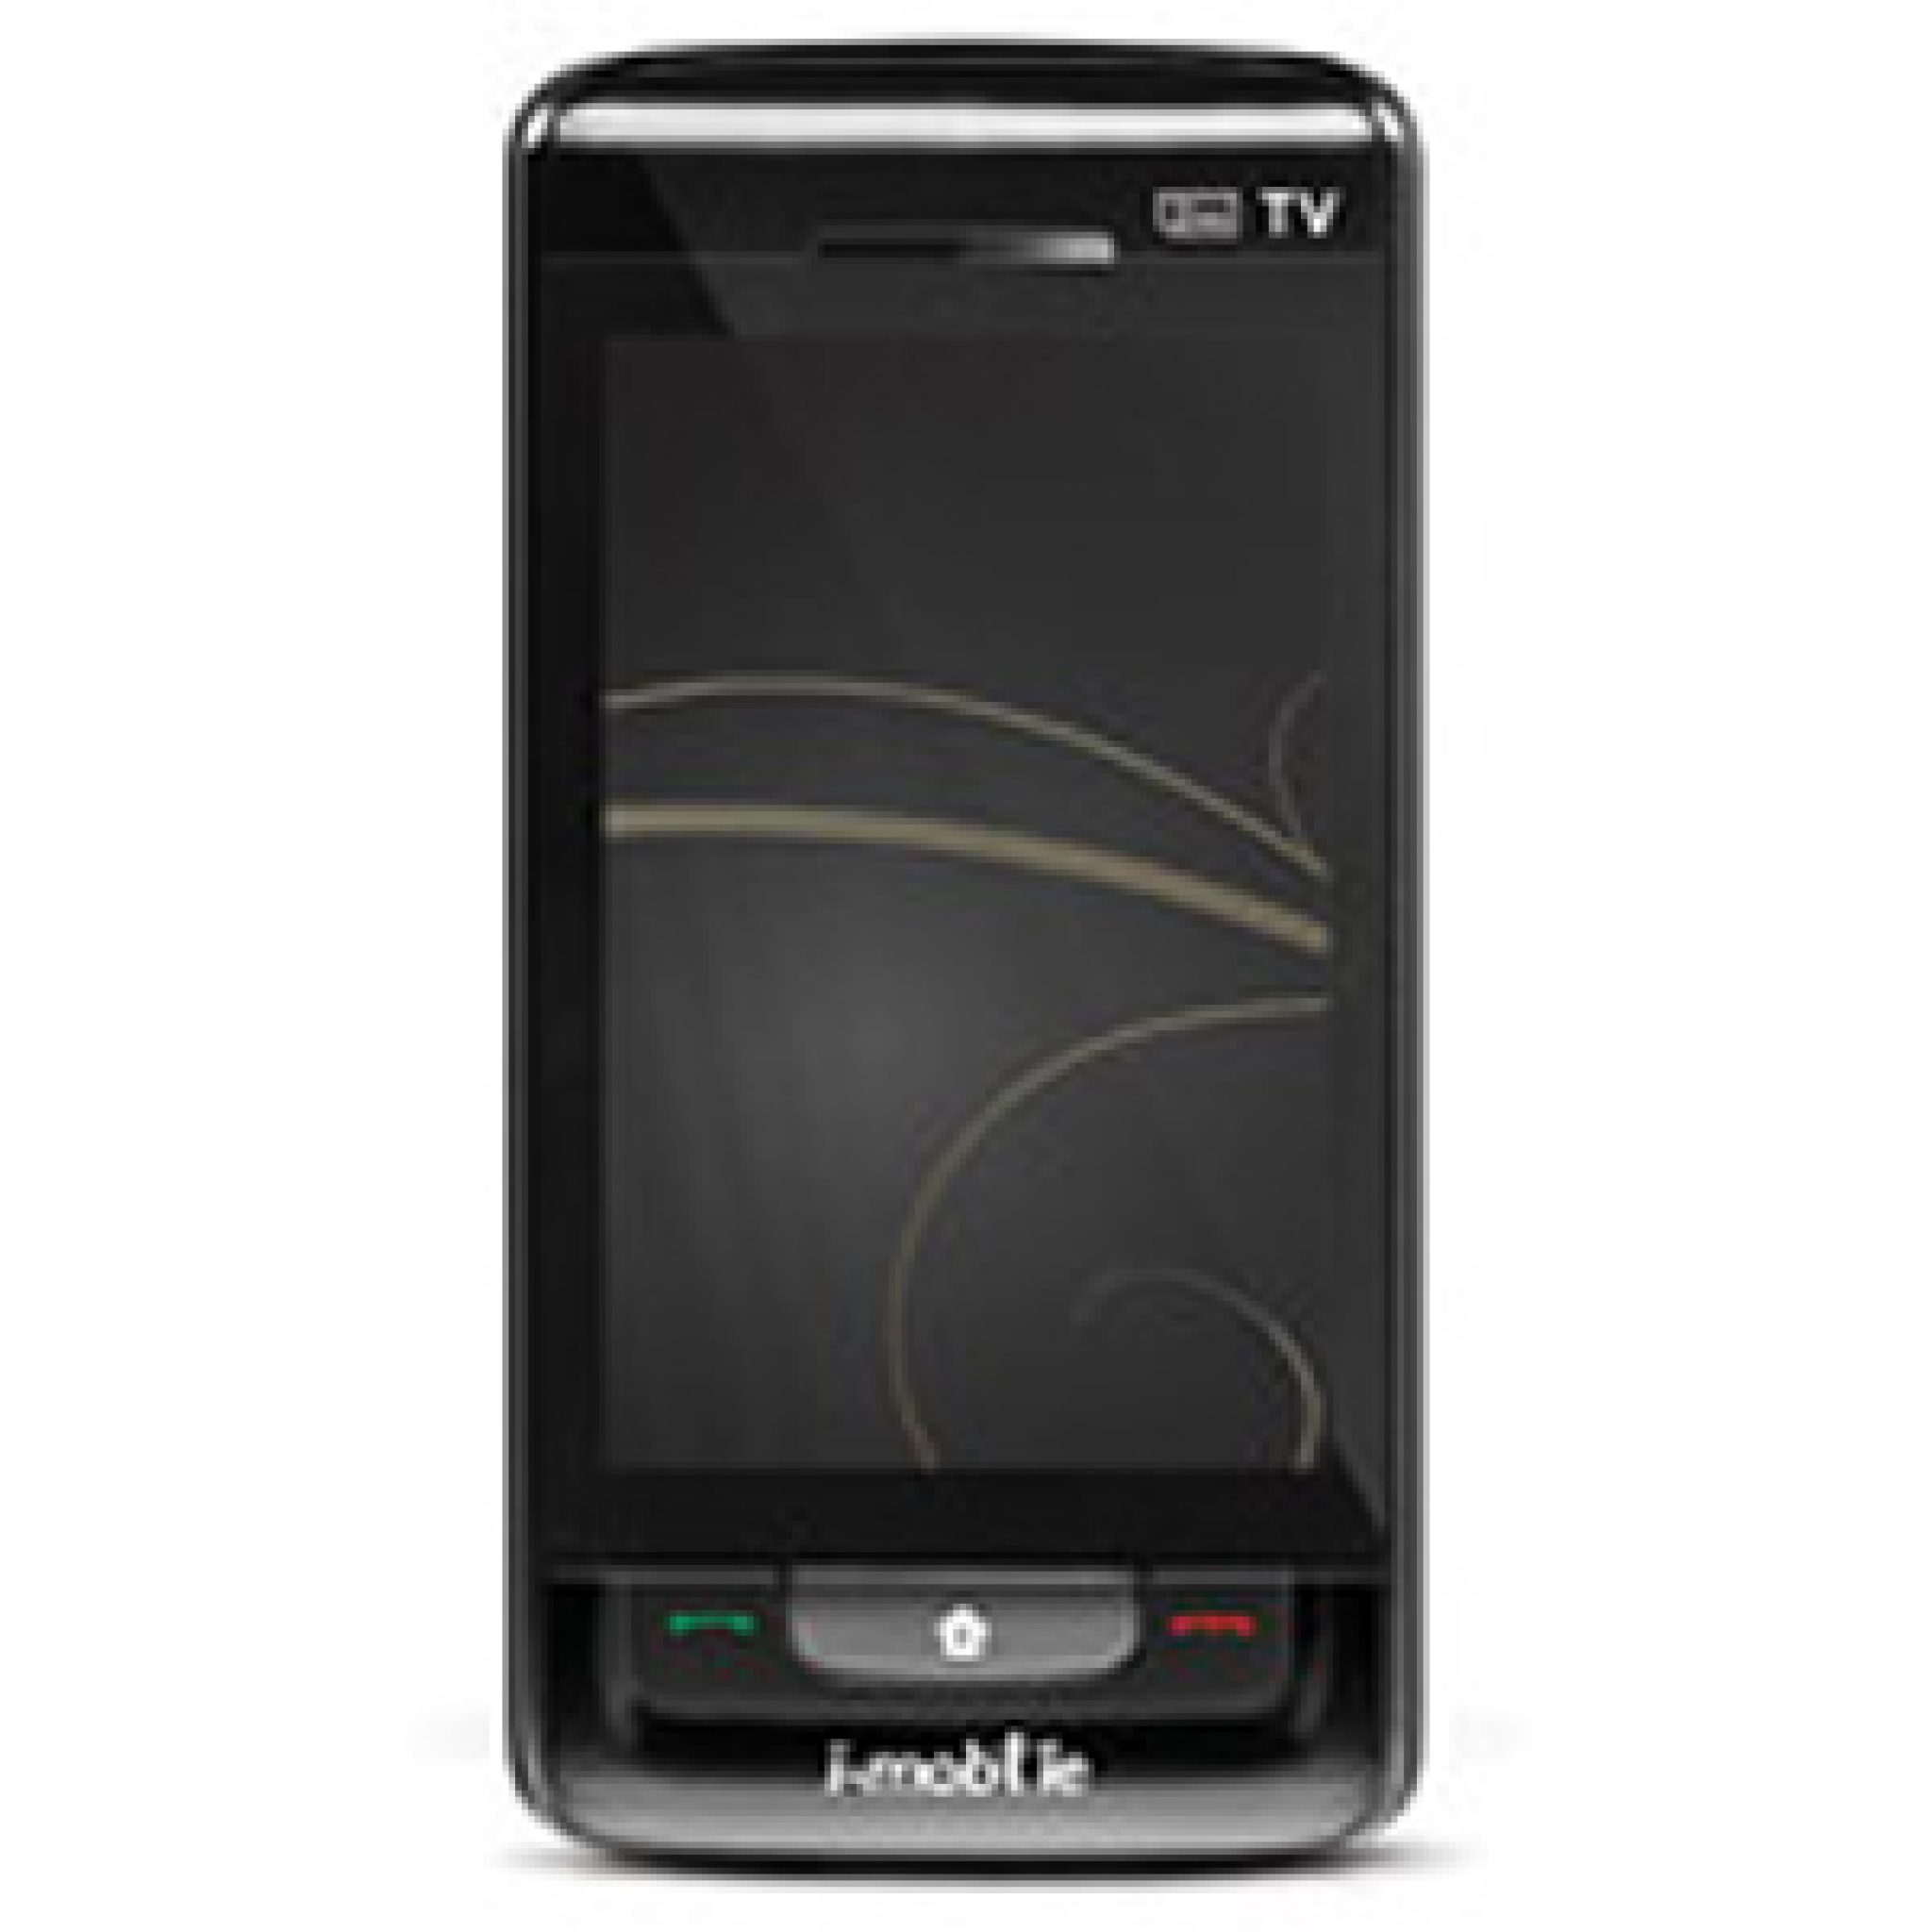 Site mobiles ru. TV mobile телефон. Mobile 01-9070369. TV mobile картинки. Черная линия вертикальная.